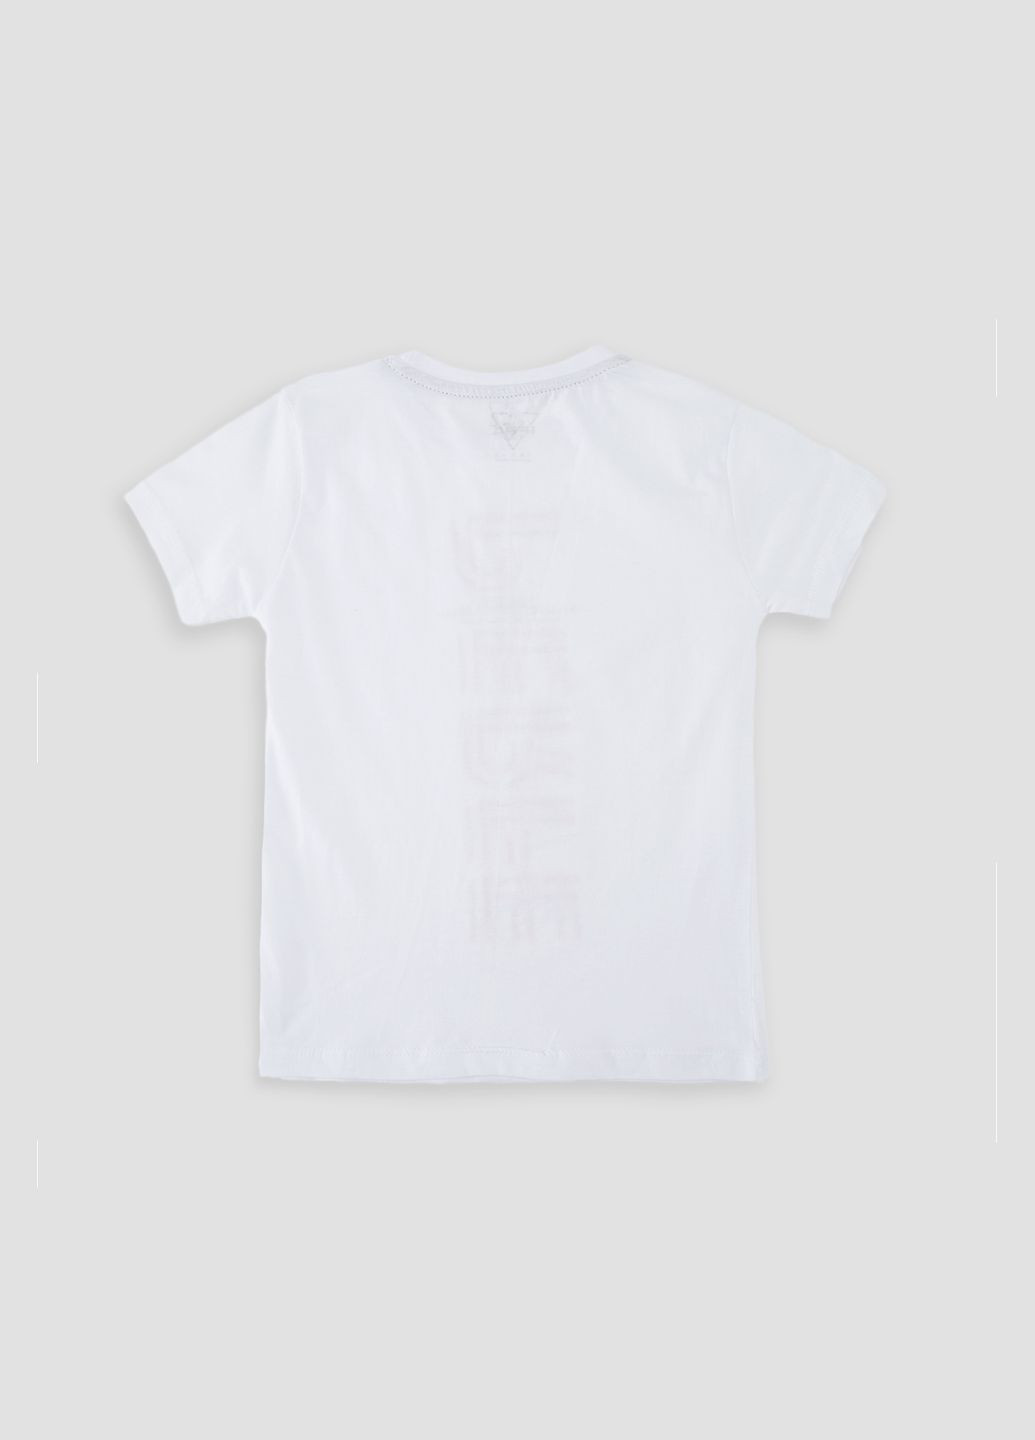 Белая летняя футболка с коротким рукавом для мальчика цвет белый цб-00244156 Ifba